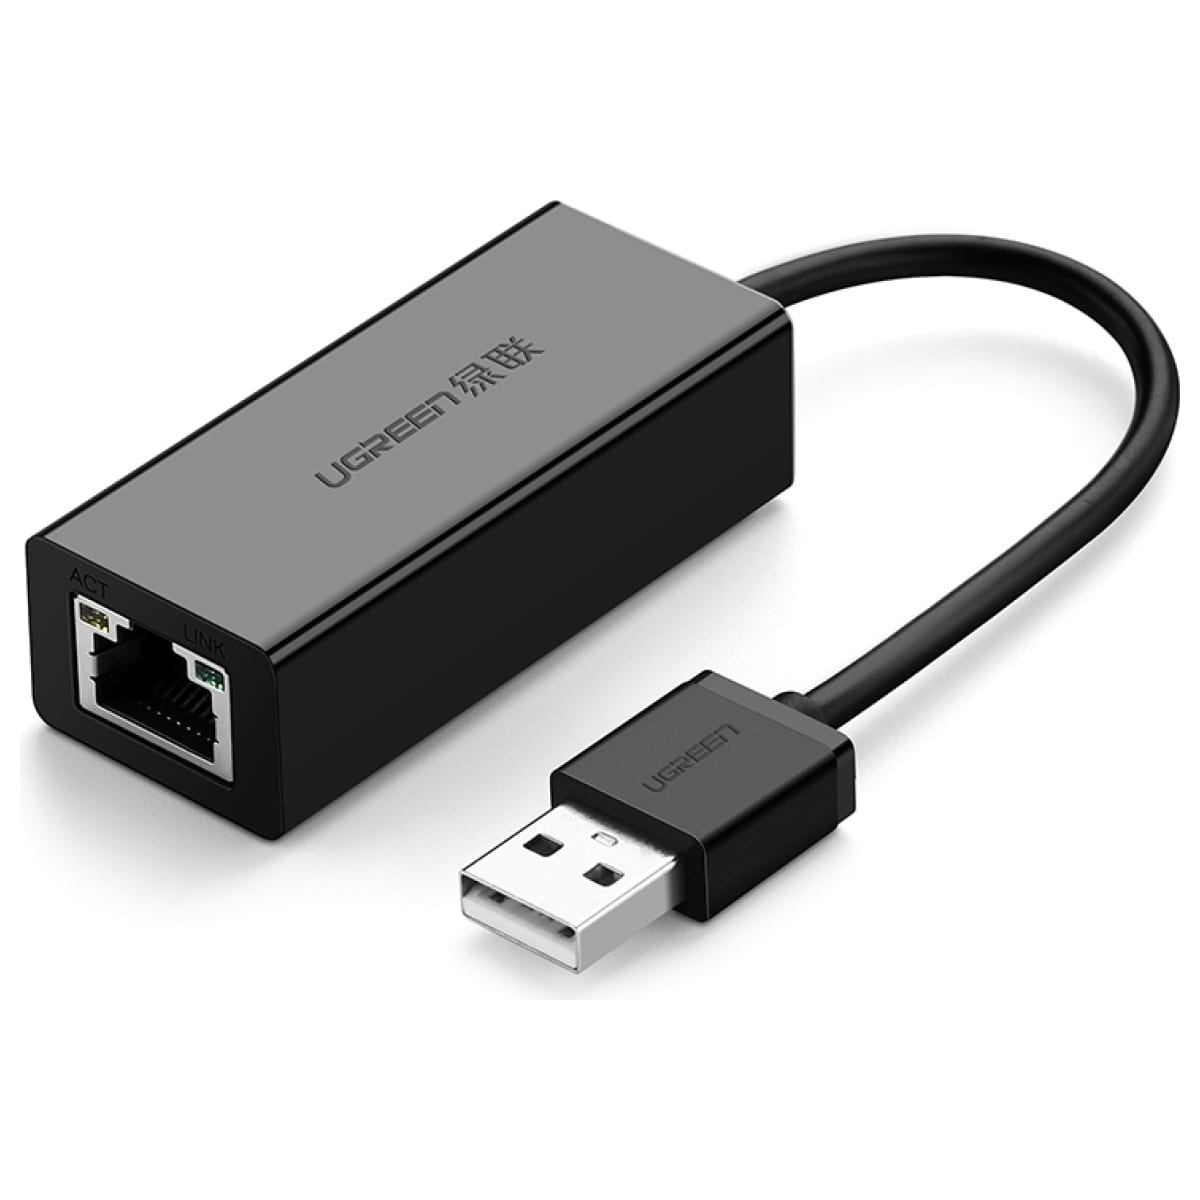 Сетевой адаптер UGREEN USB 2.0, 10/100 Мбит/с, цвет черный (20254) 2021 new new practical wired sensor receiving bar for nintendo wii wii u